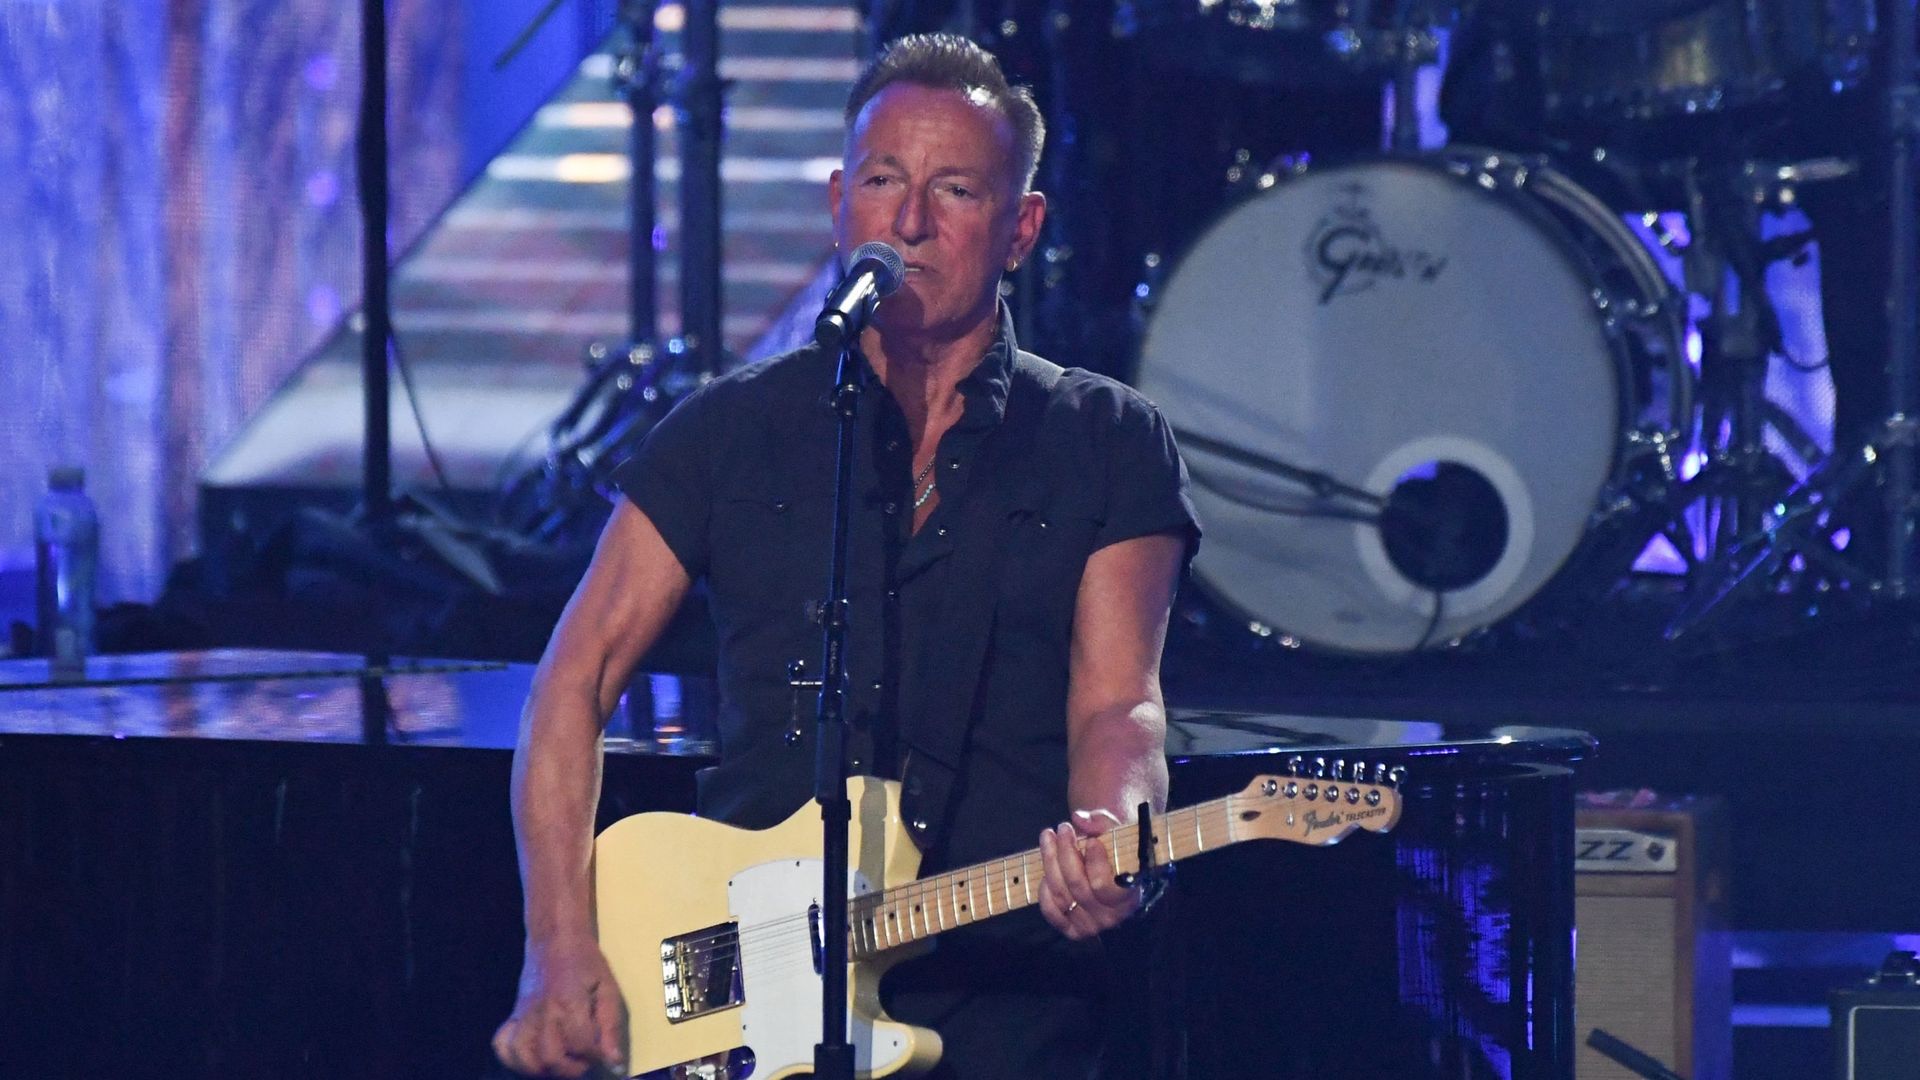 Le chanteur américain Bruce Springsteen a vendu l’entièreté de son catalogue musical à Sony Music Entertainment (SME), filiale du géant japonais Sony Corporation pour un montant de près d’un demi-milliard de dollars (442 millions d’euros).